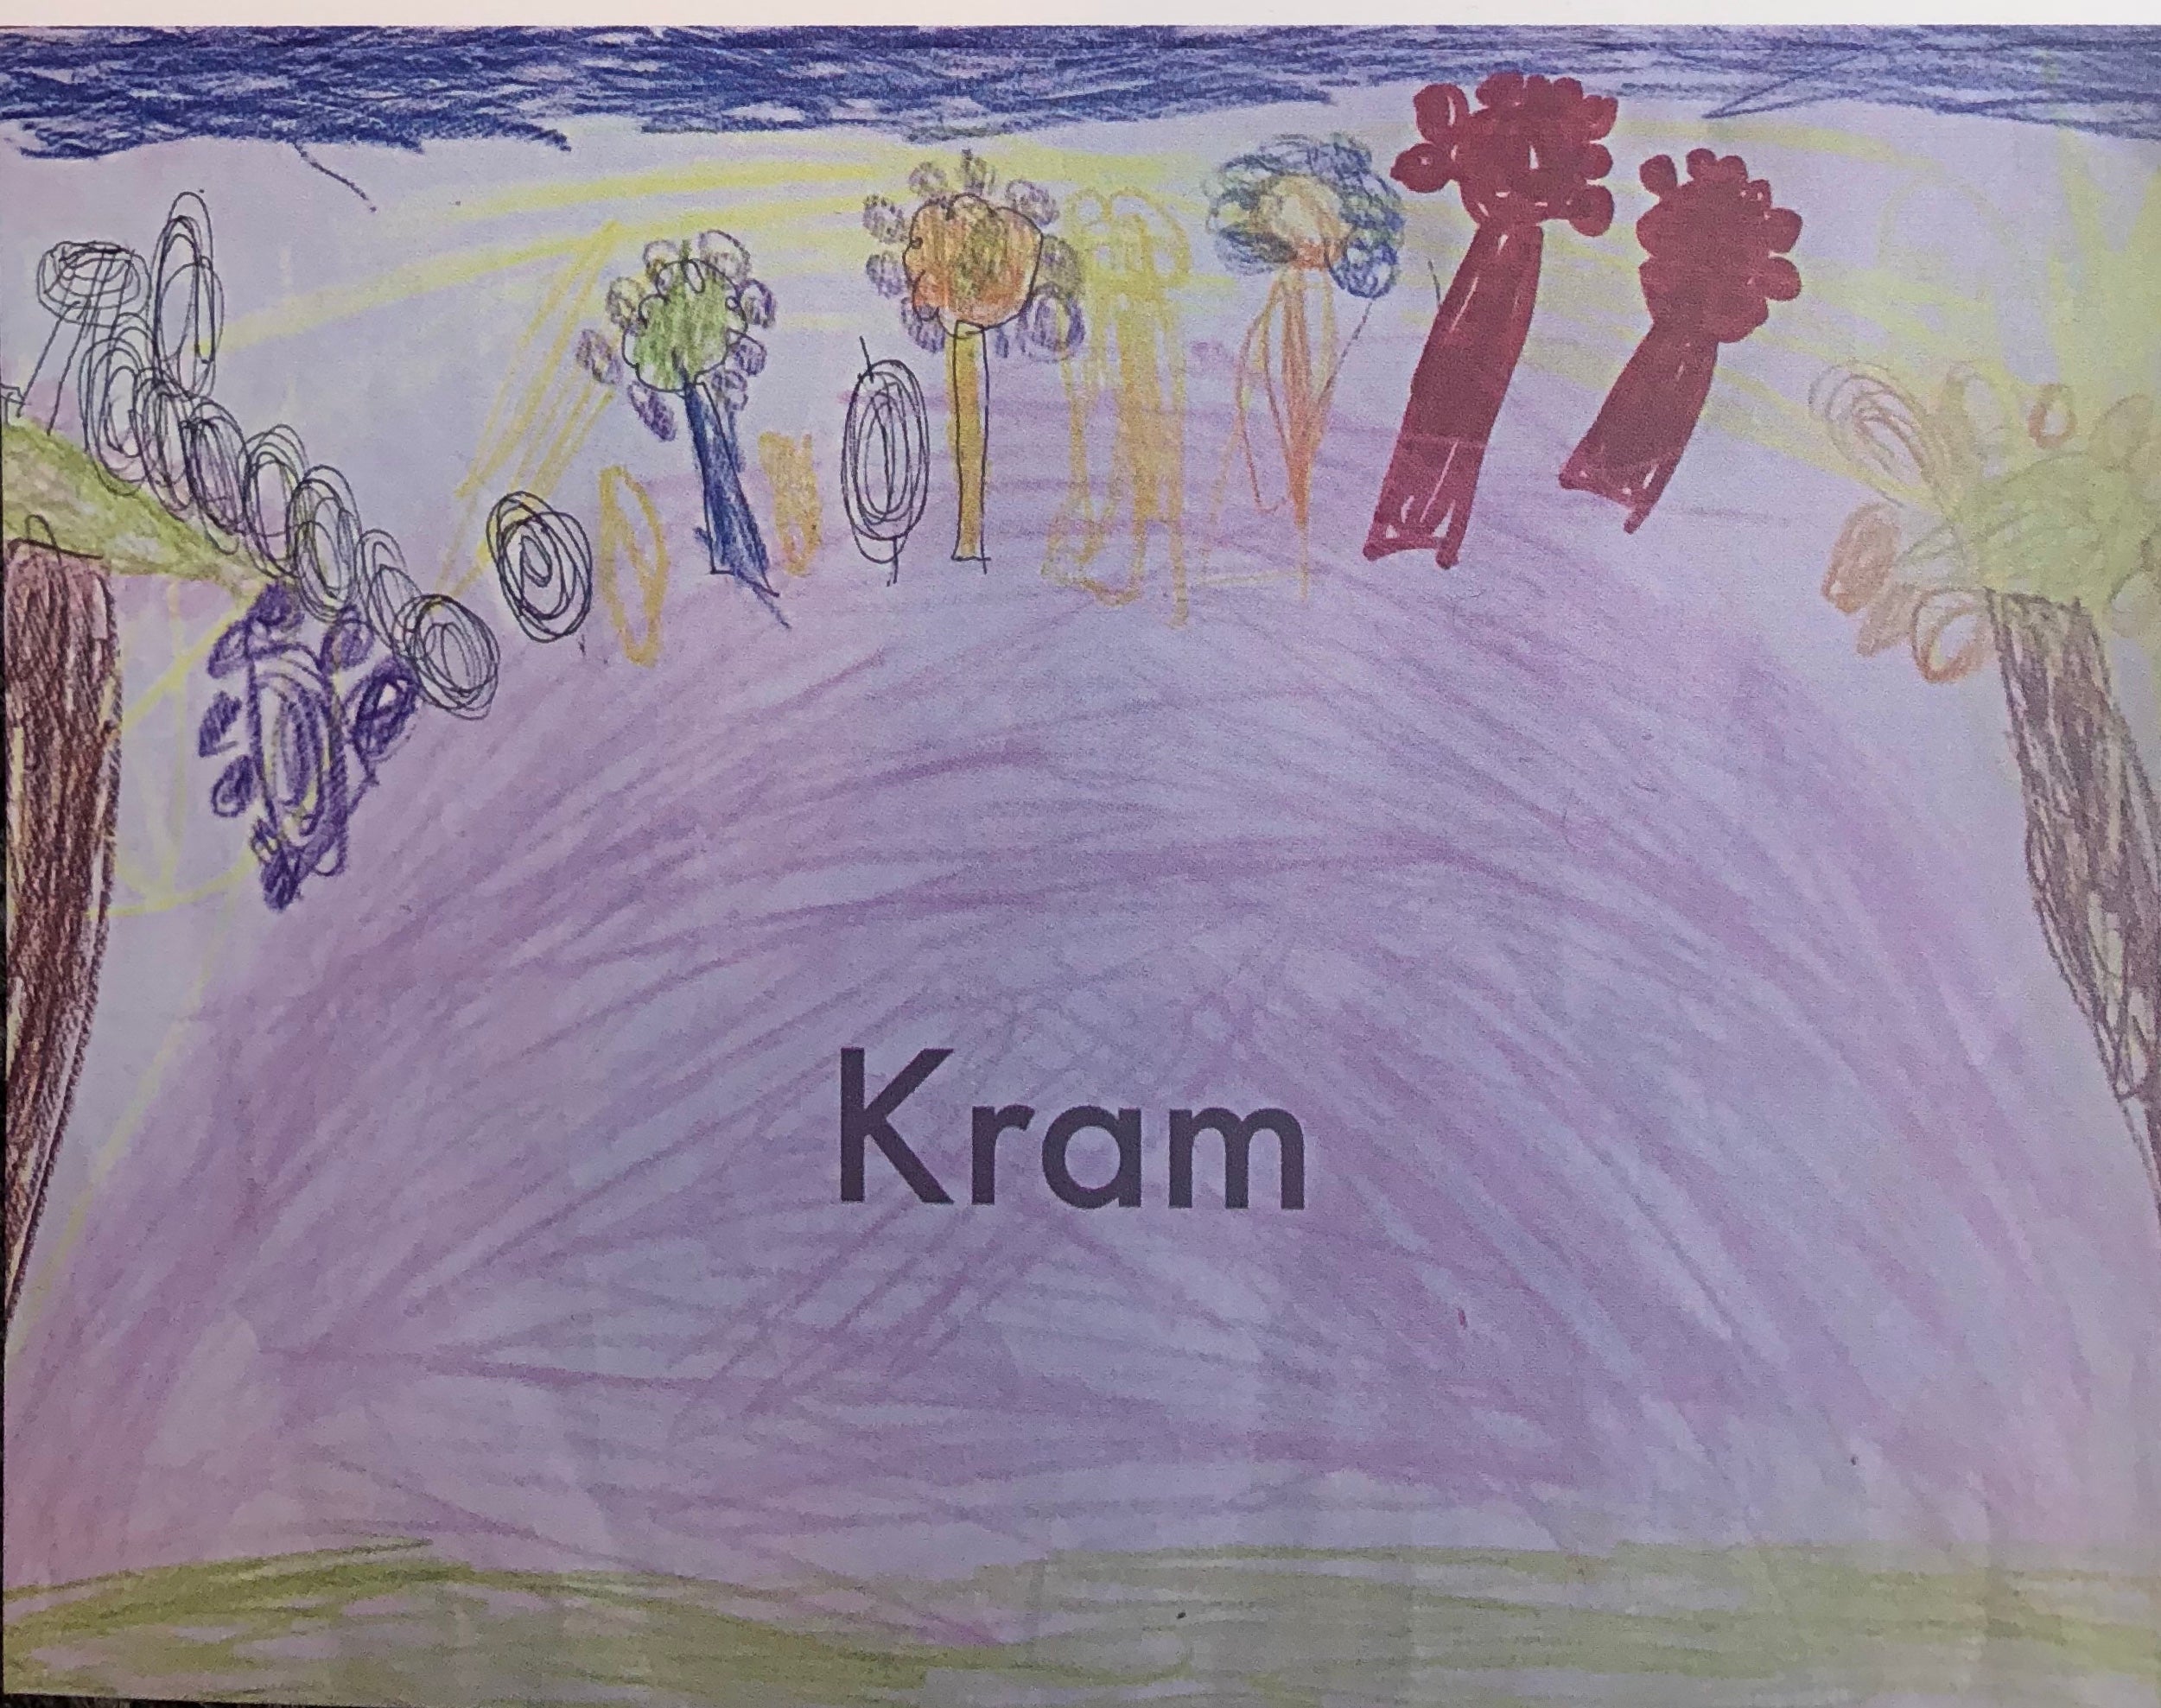 Ett kort skapat av våra unga konstnärer, med texten "Kram". Motivet är färglatt med blommor, träd och en himmel i bland annat lila, bruna, gula färger.